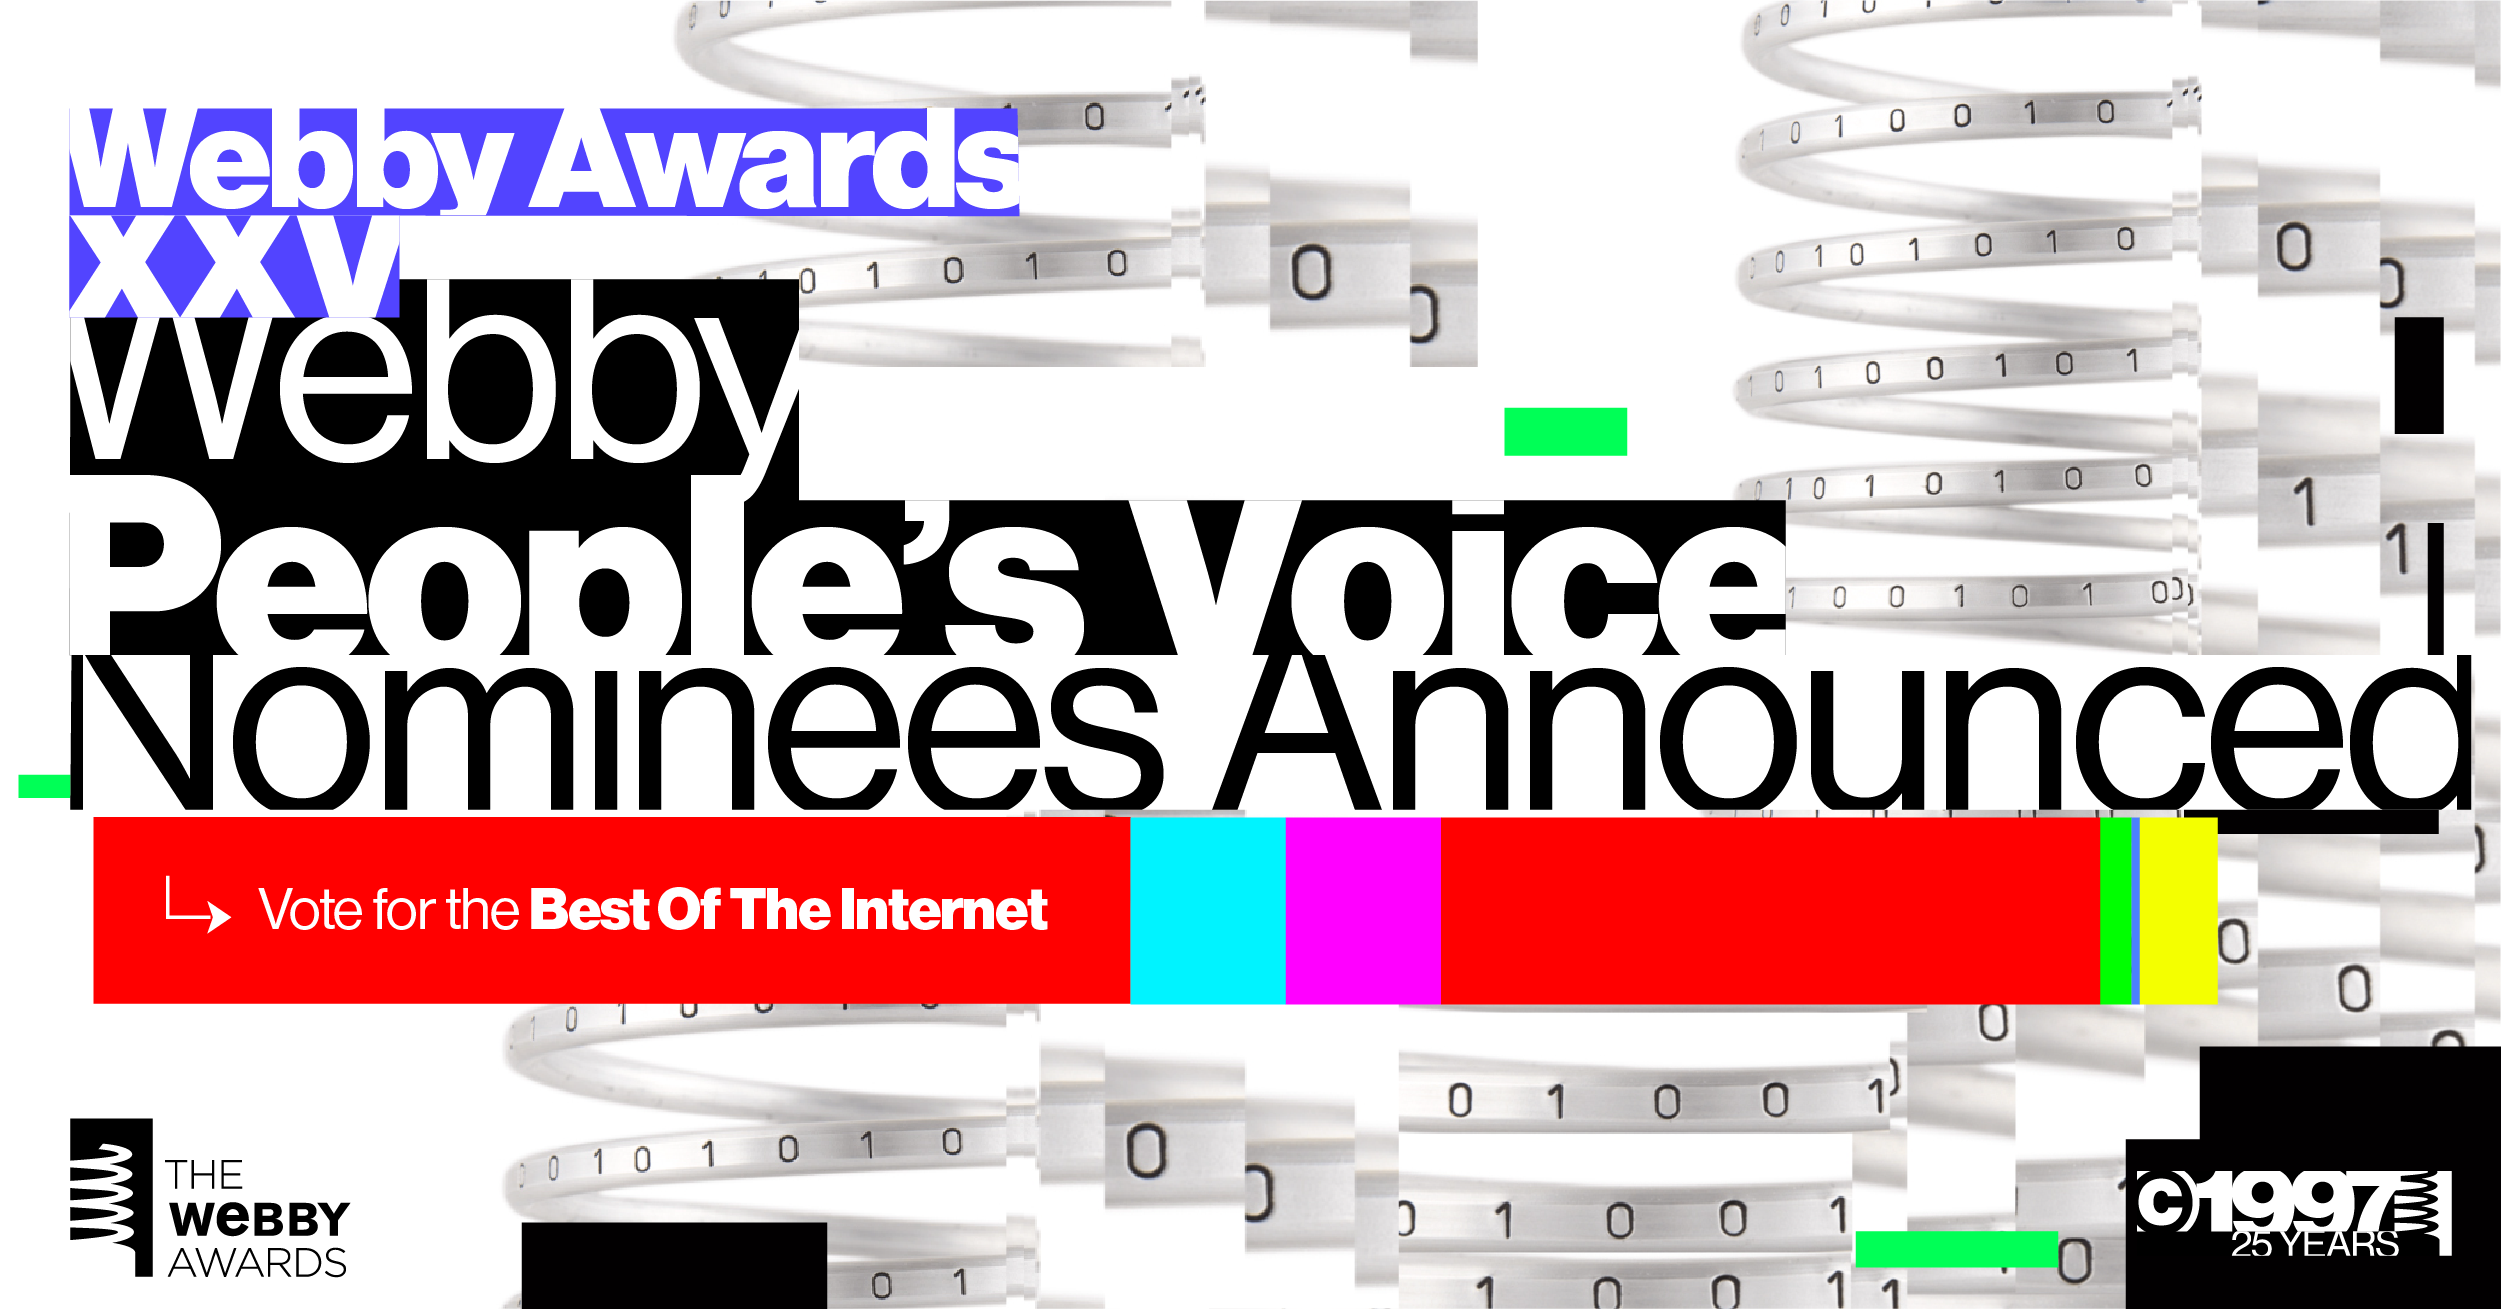 m ss ng p eces It’s time to vote for The Webby Awards!